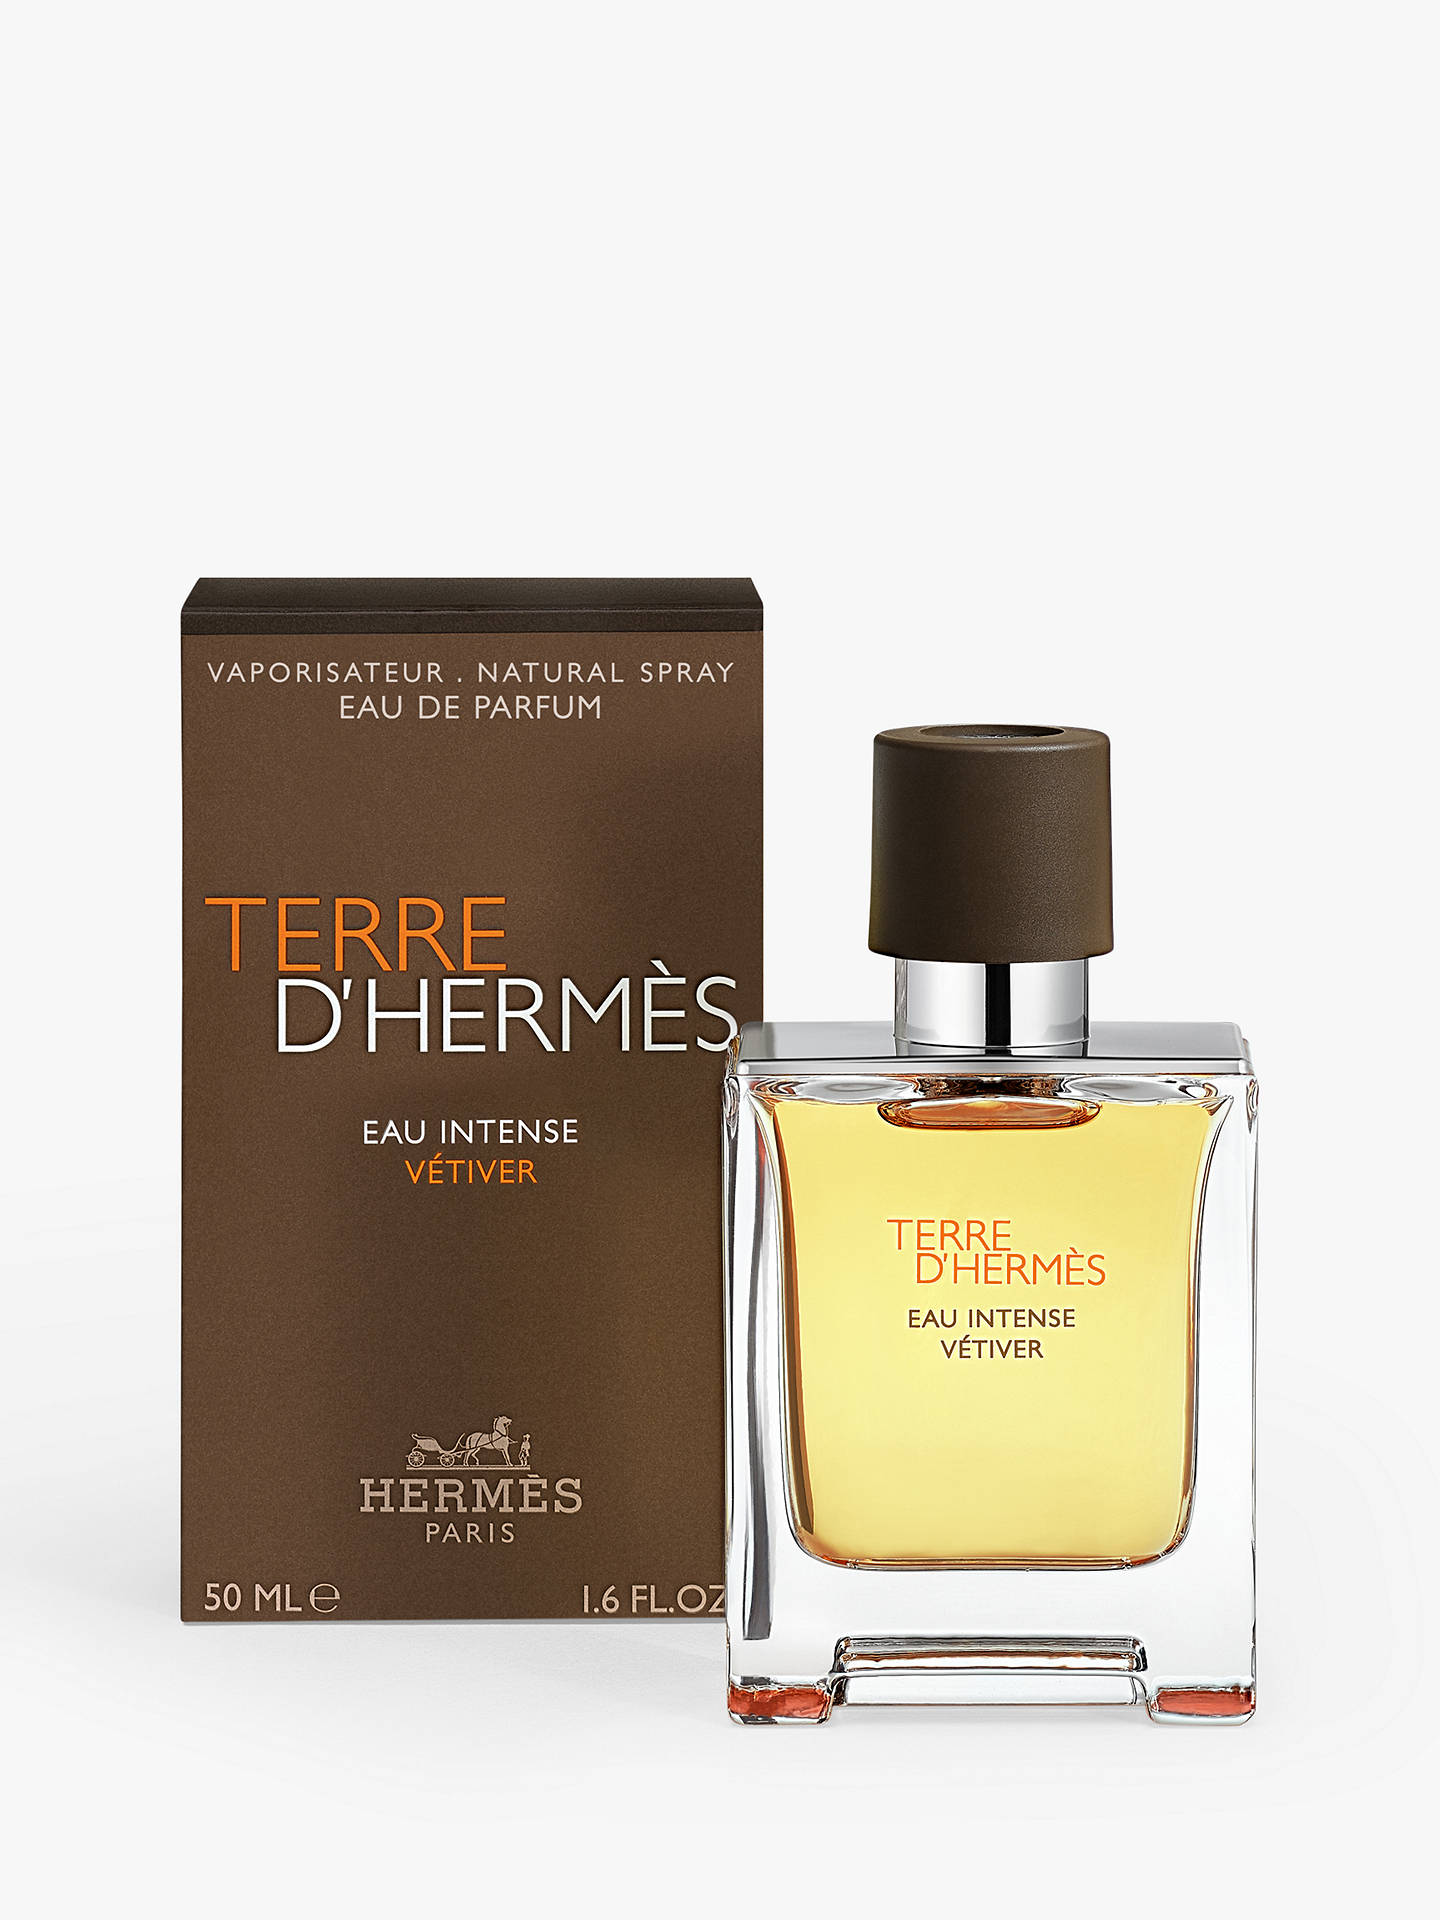 HERMÈS Terre d'Hermès Eau Intense Vetiver Eau de Parfum at John Lewis